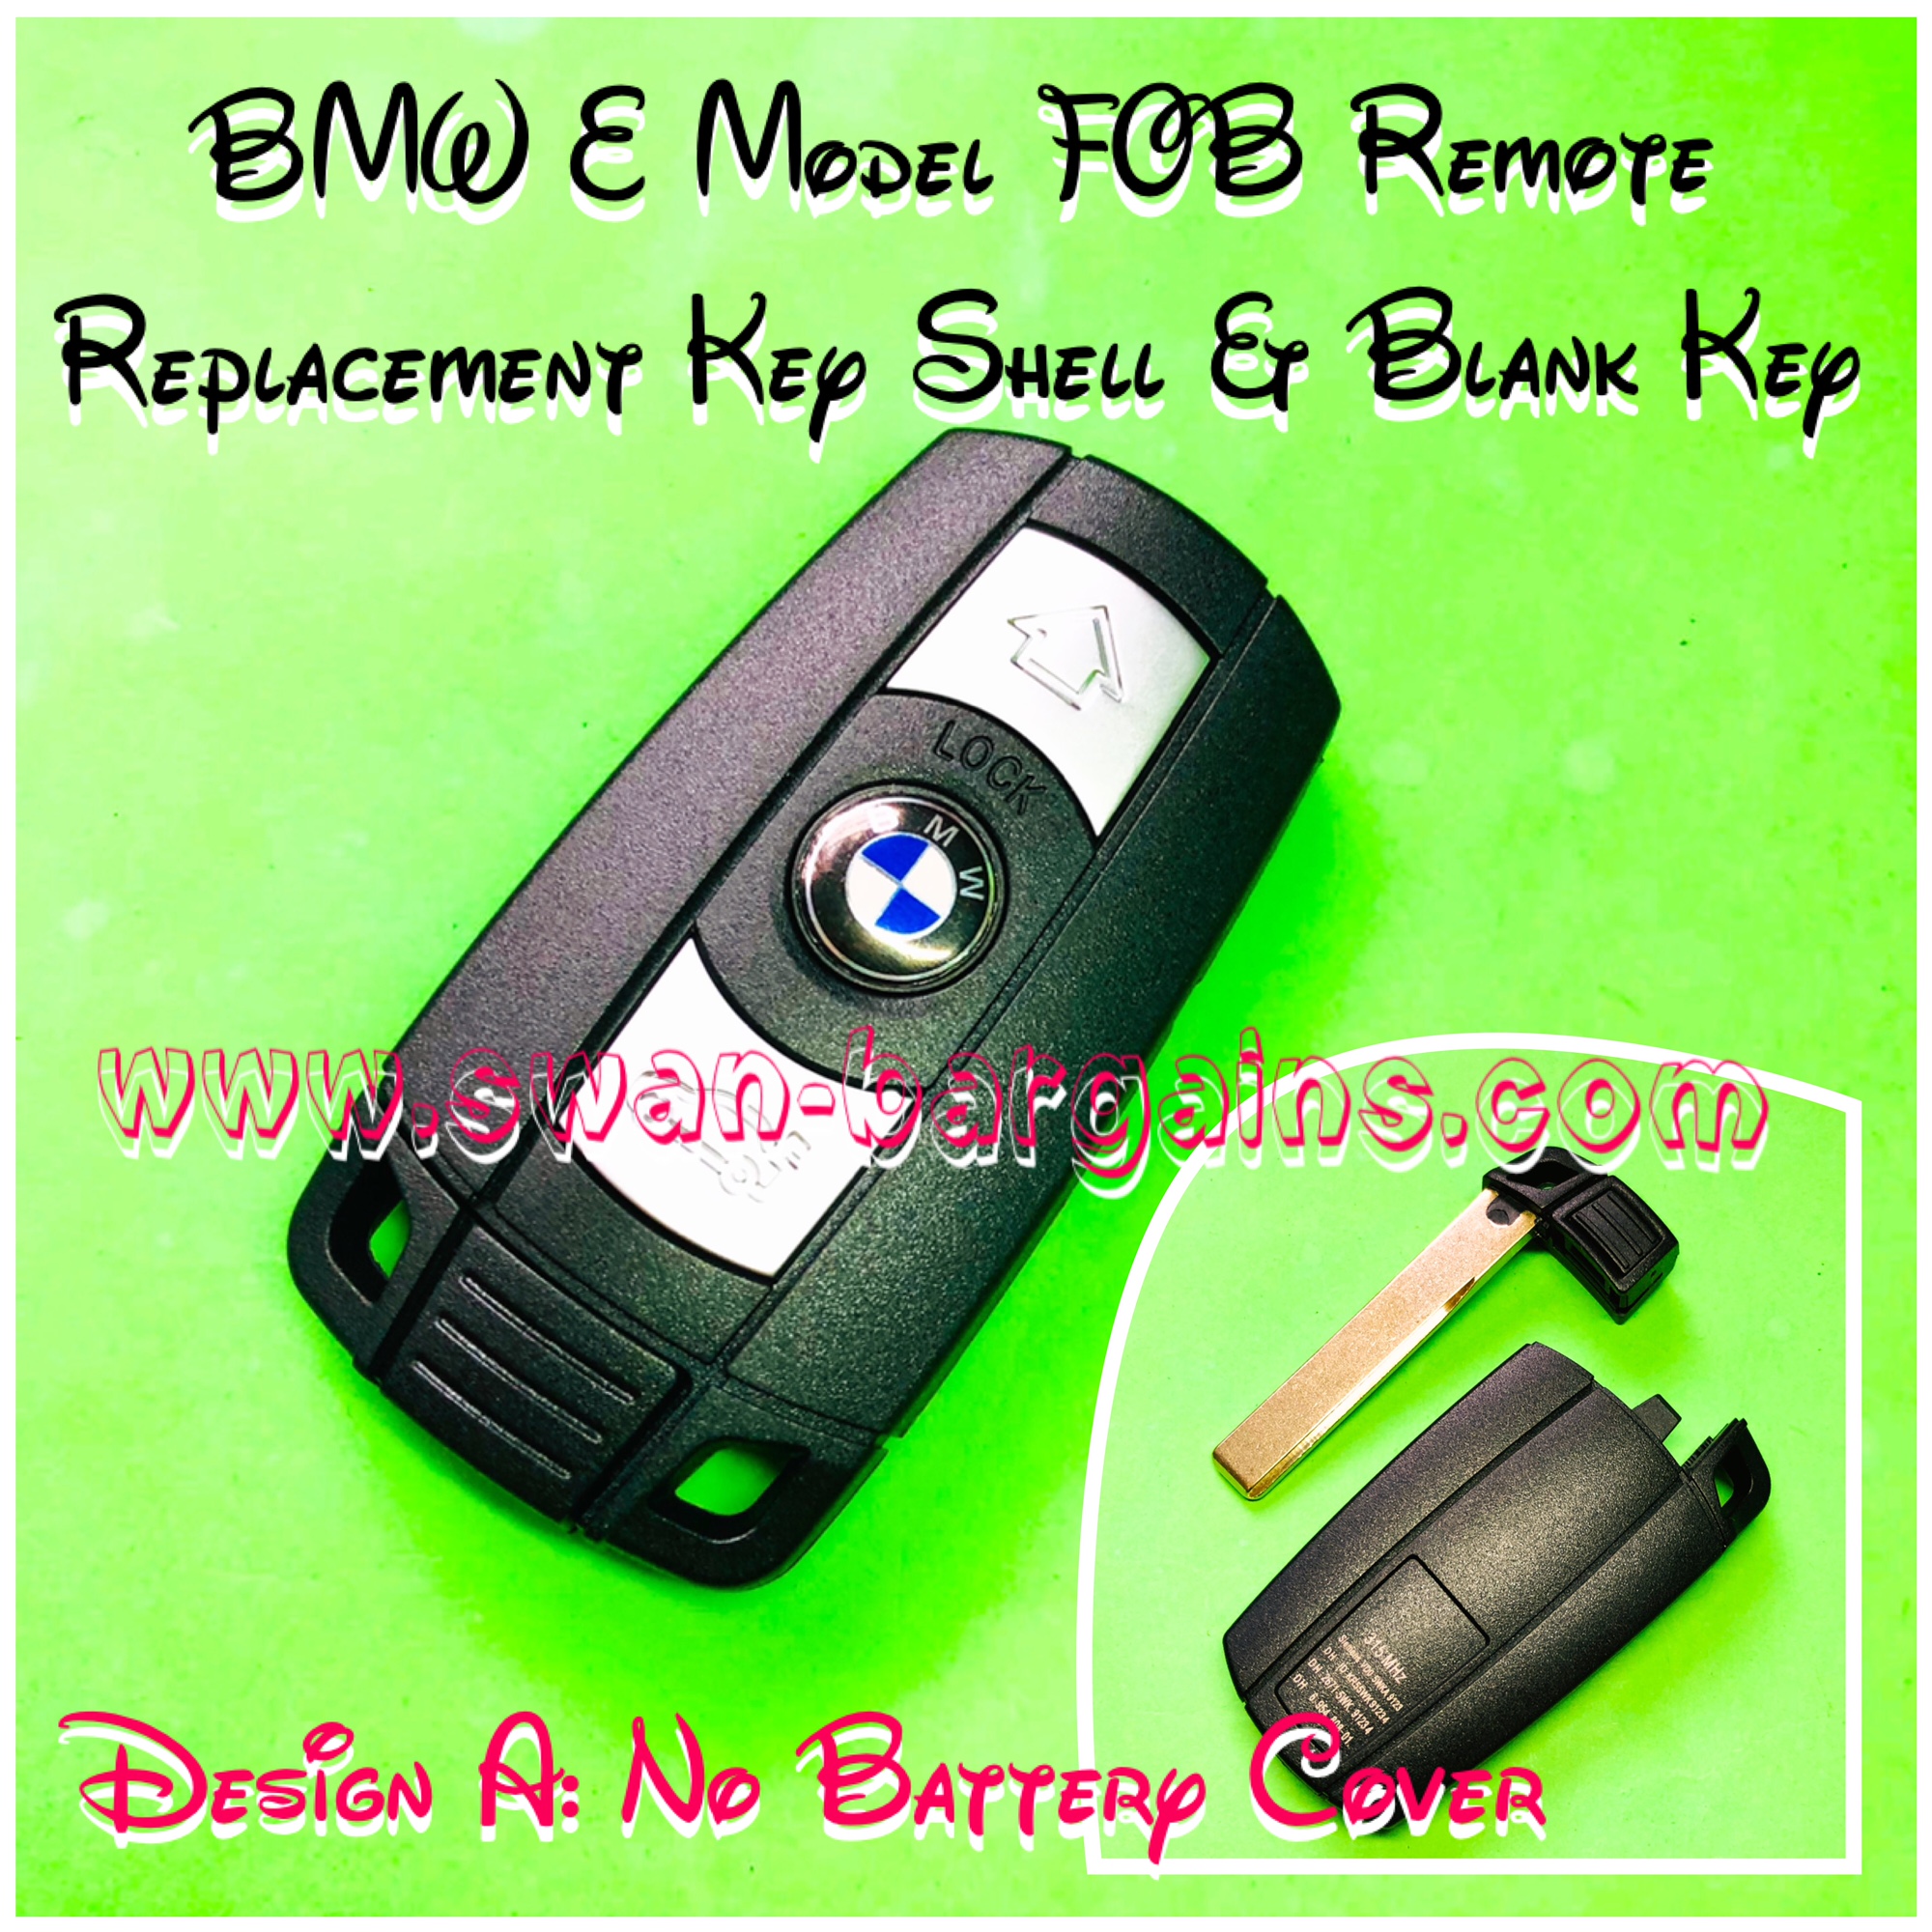 BMW Keyless Smart Remote Key Fob Shell Singapore - E Model Design A